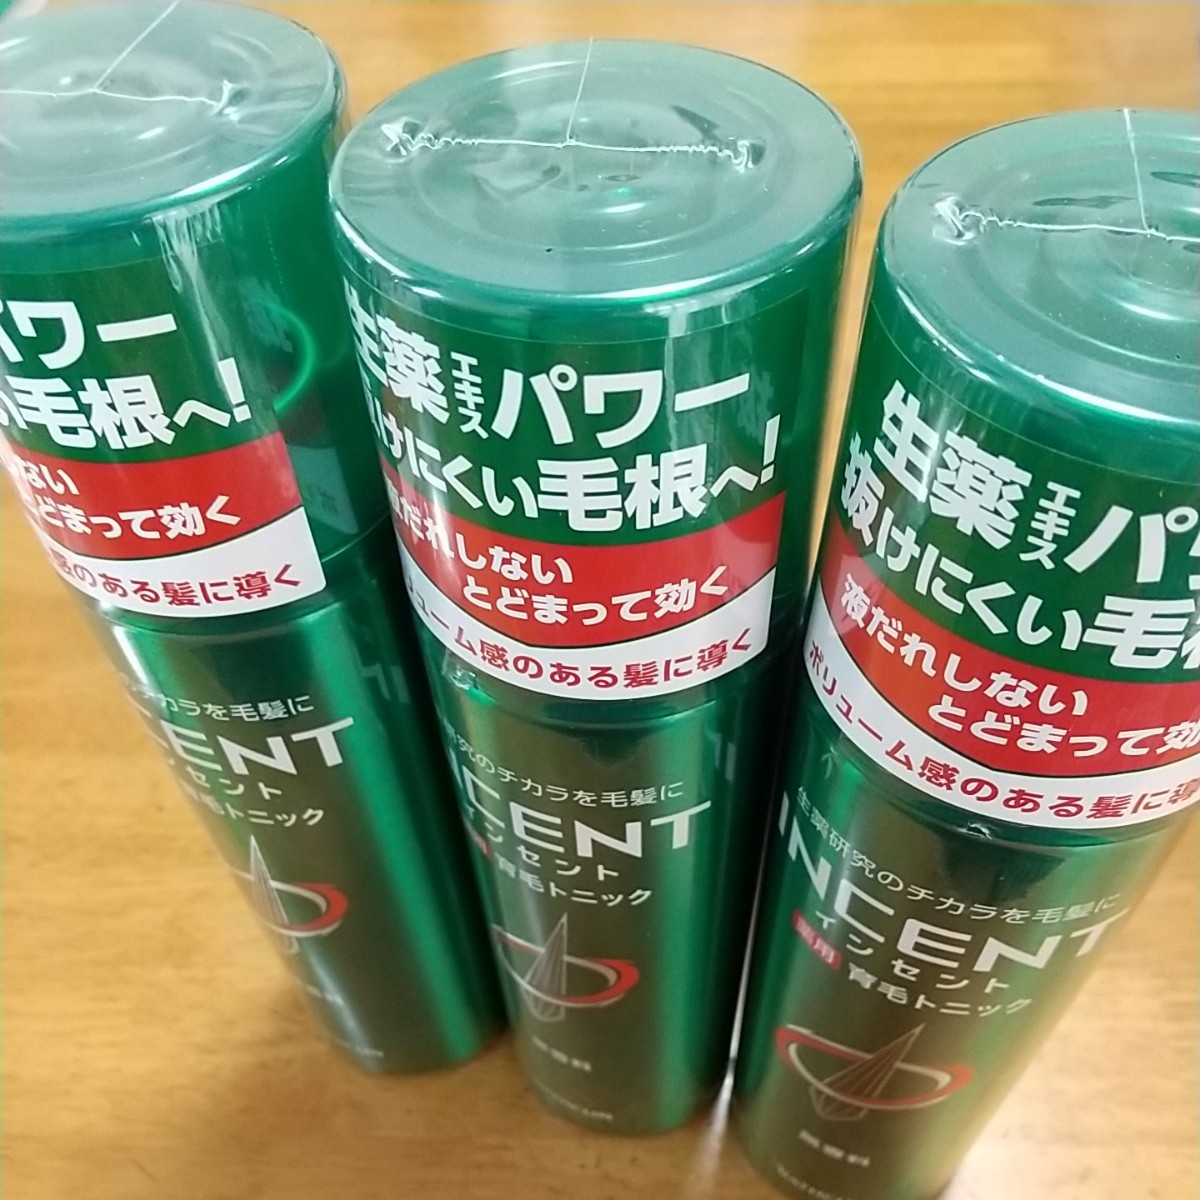 薬用育毛トニック インセント 無香料 3本セット【送料込】